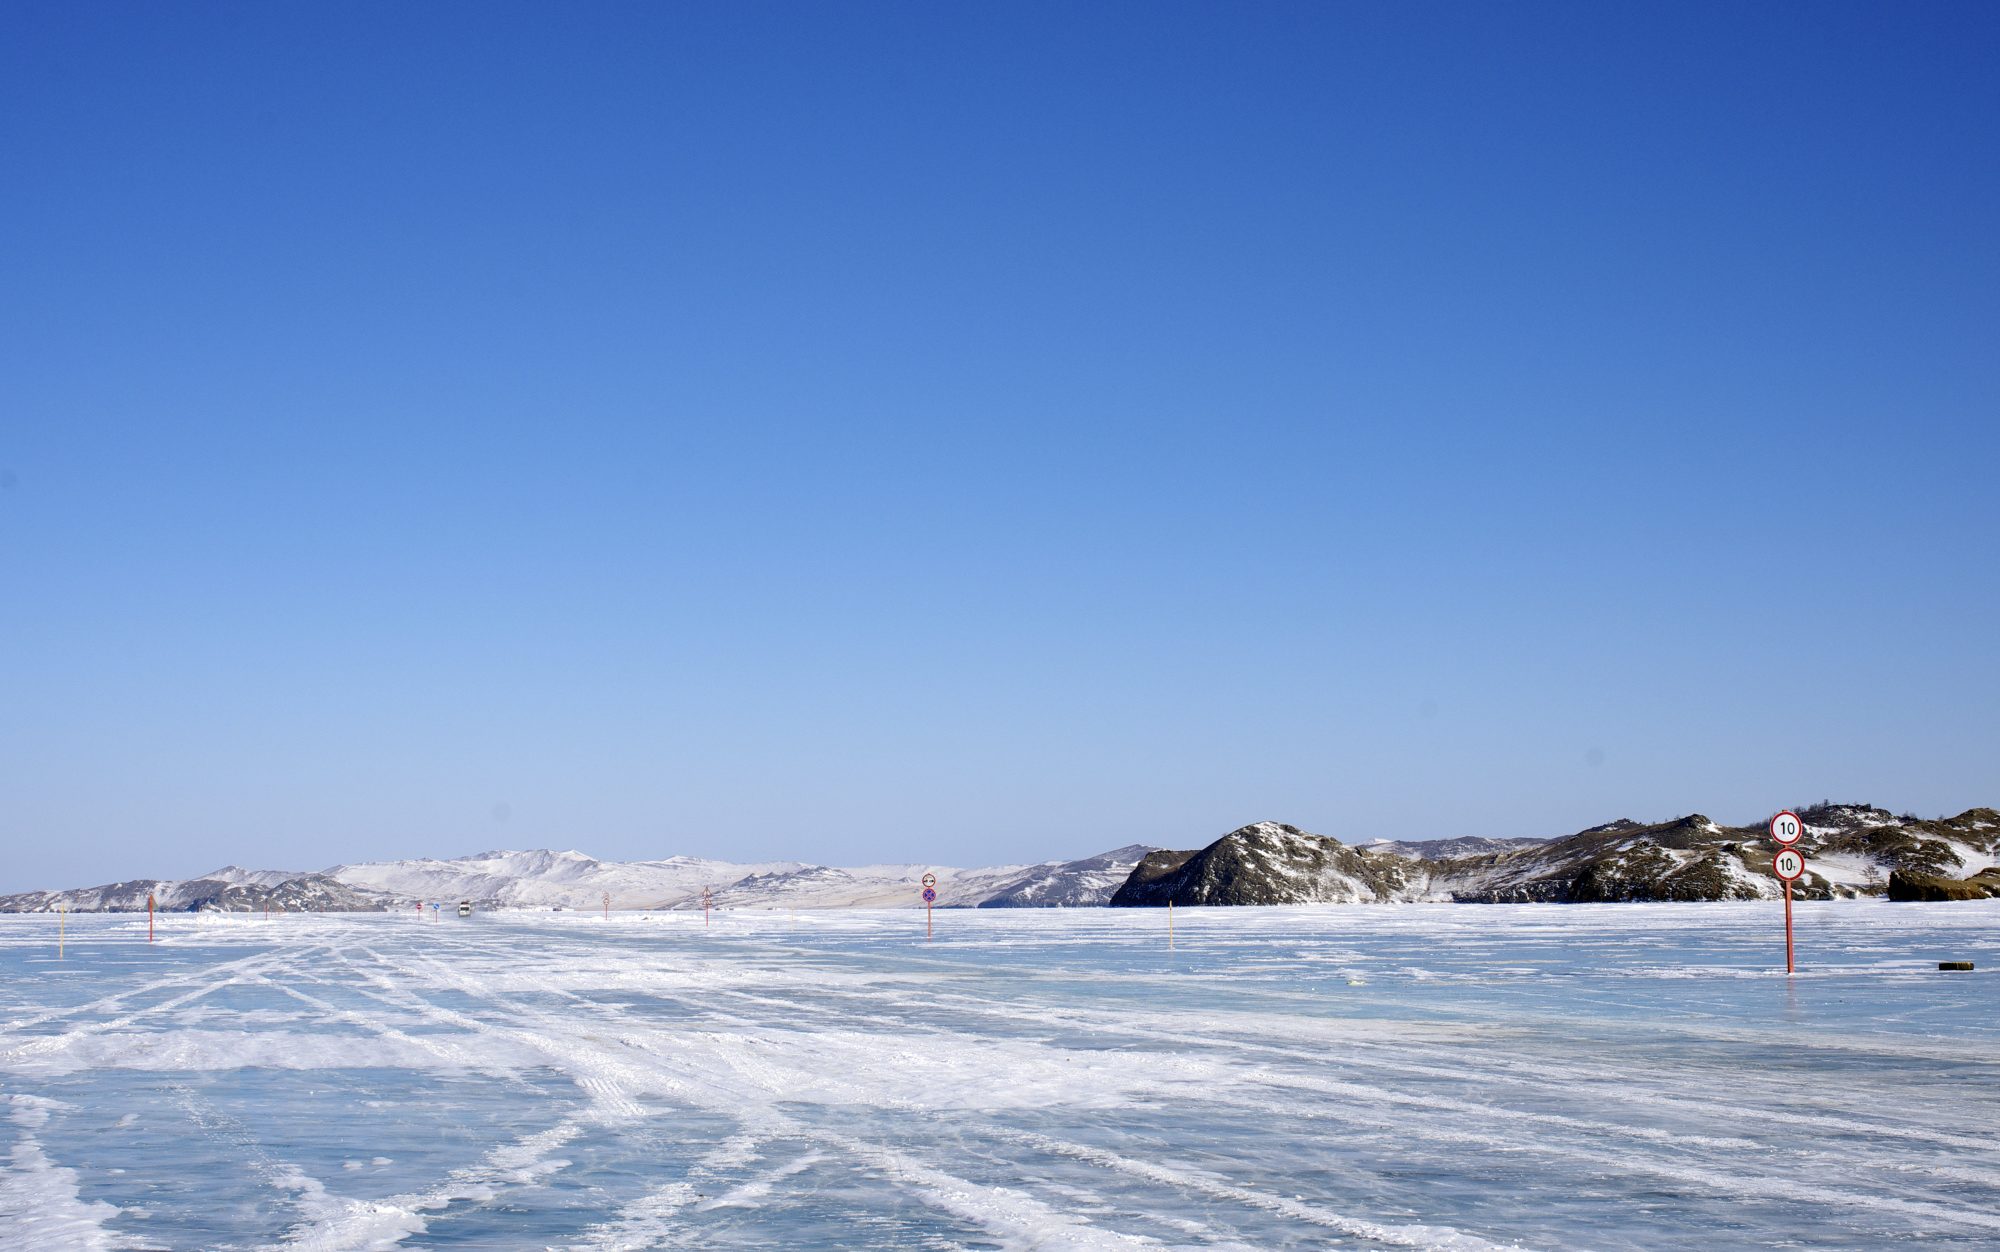 «Машина с туристами провалилась в трещину во льду на Малом море», — сообщают Иркутские новости